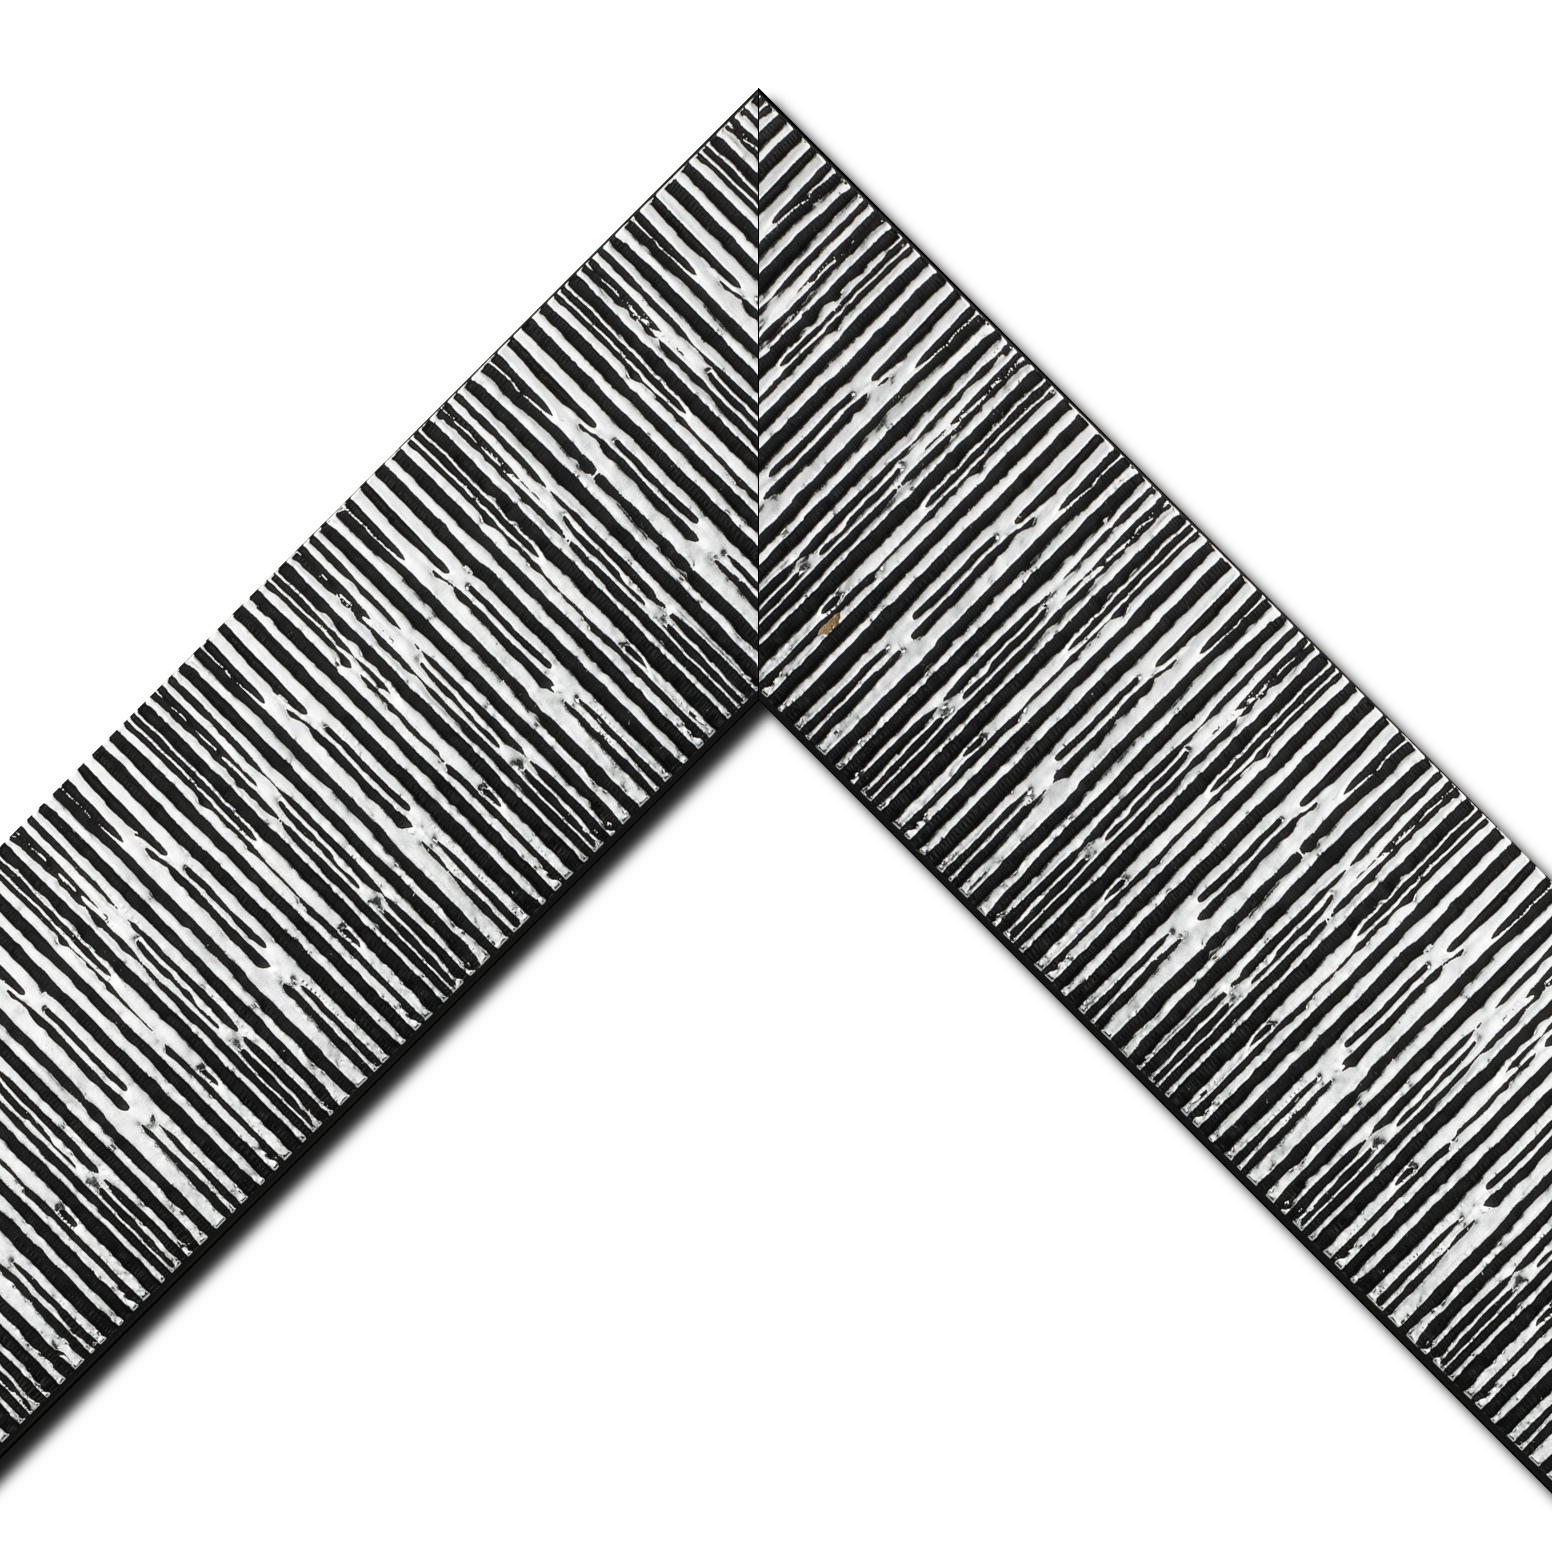 Baguette bois profil plat largeur 10.5cm couleur noir mat strié argent ckromé en relief